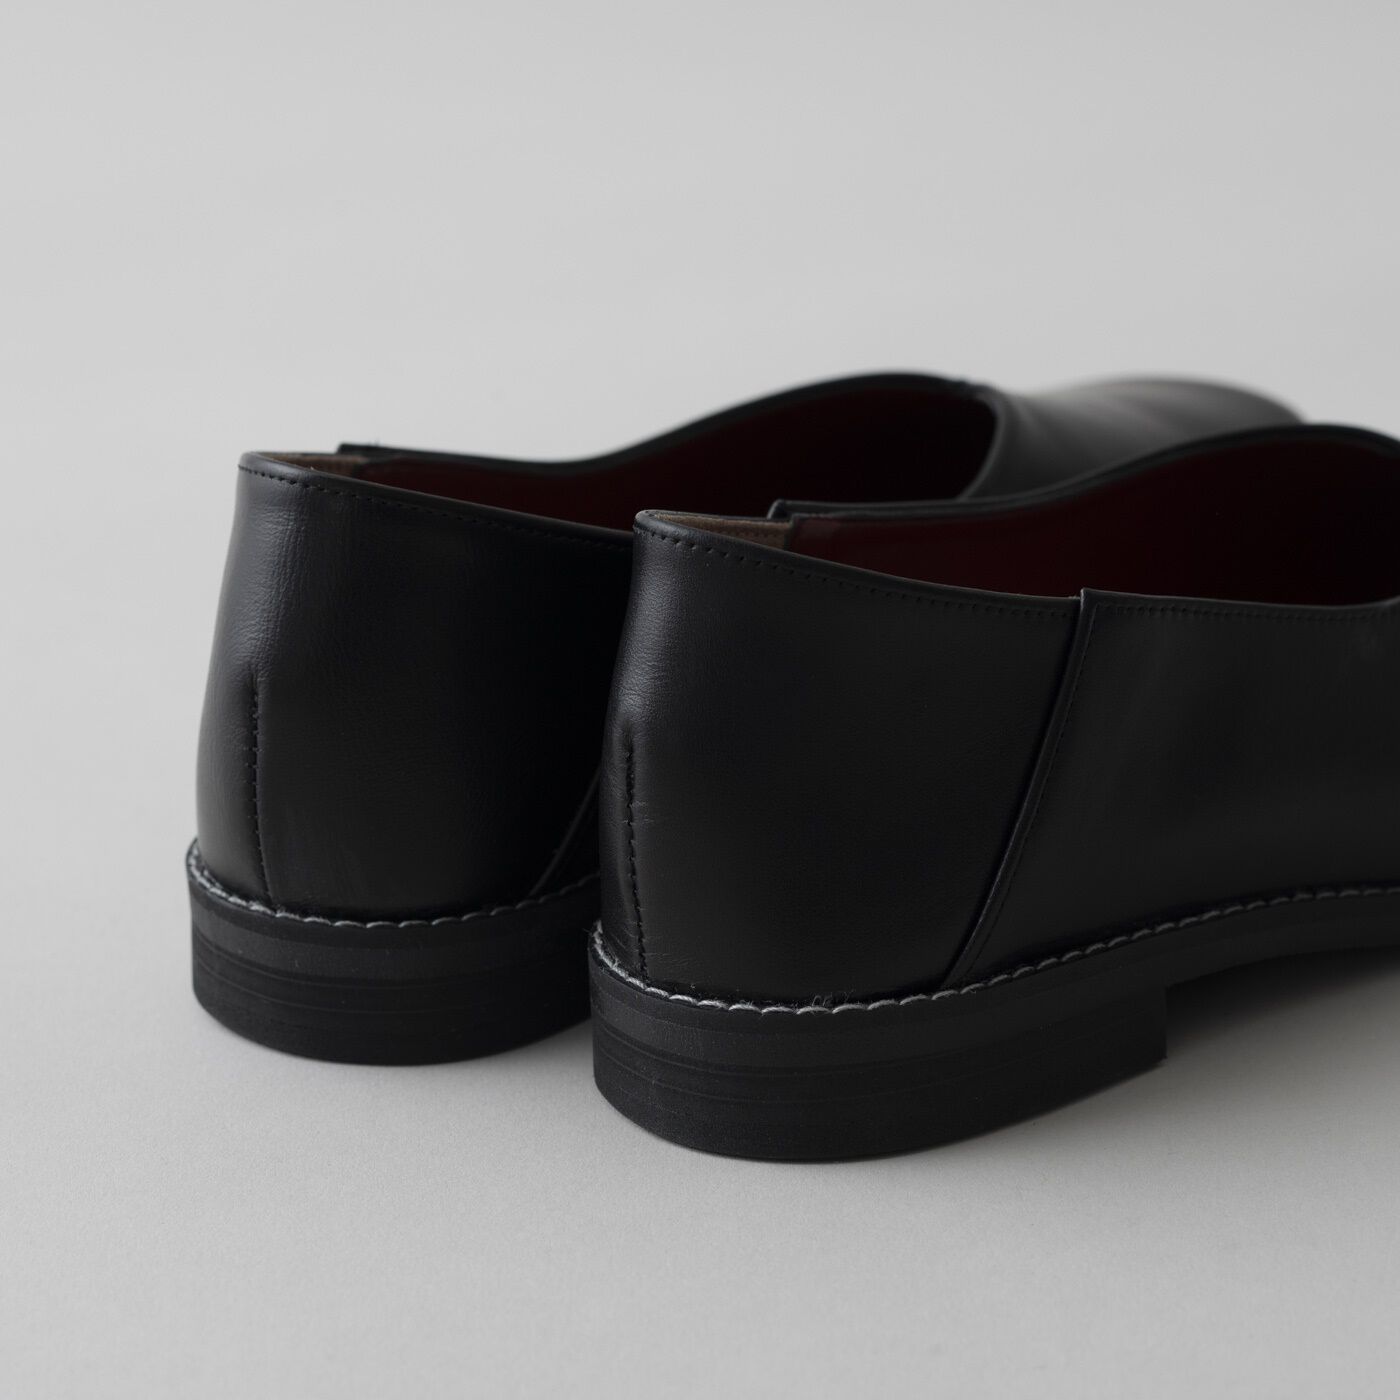 ＆Stories|長田の靴メーカーと作った　職人本革のスクエアノーズシューズ〈ブラック〉|ほどよいヒール高と疲れにくいクッション性で、機能面もばっちり。